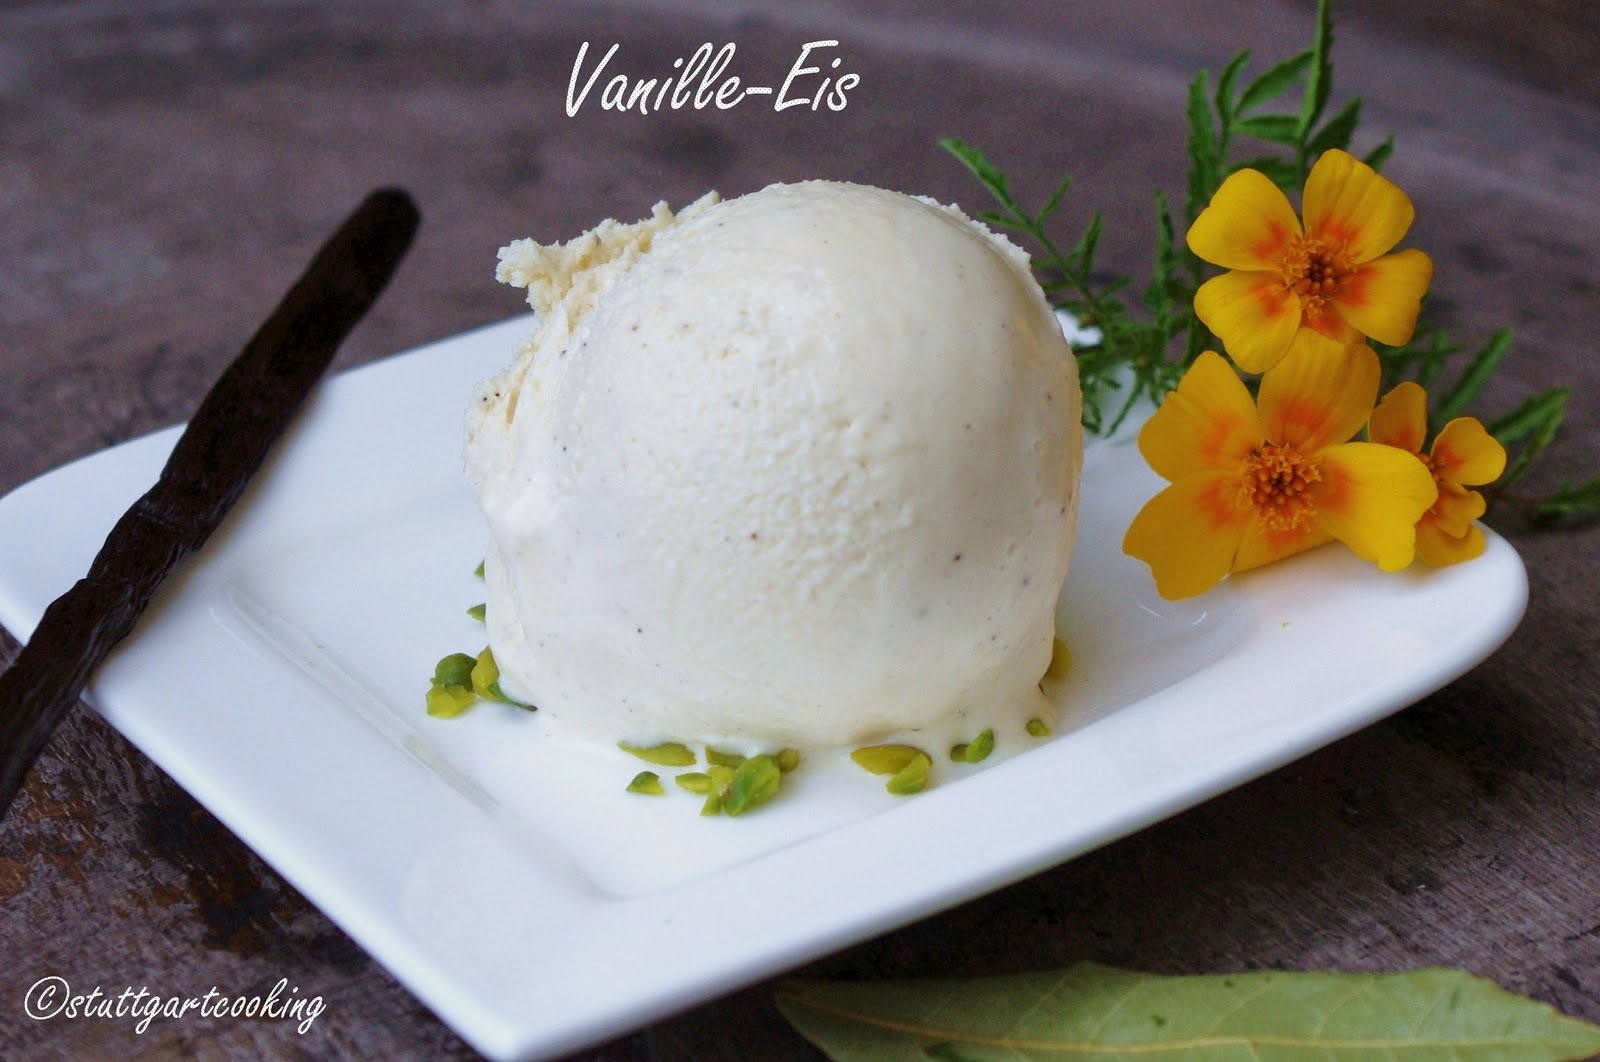 stuttgartcooking: Vanille-Eis, eine neue Rezeptur